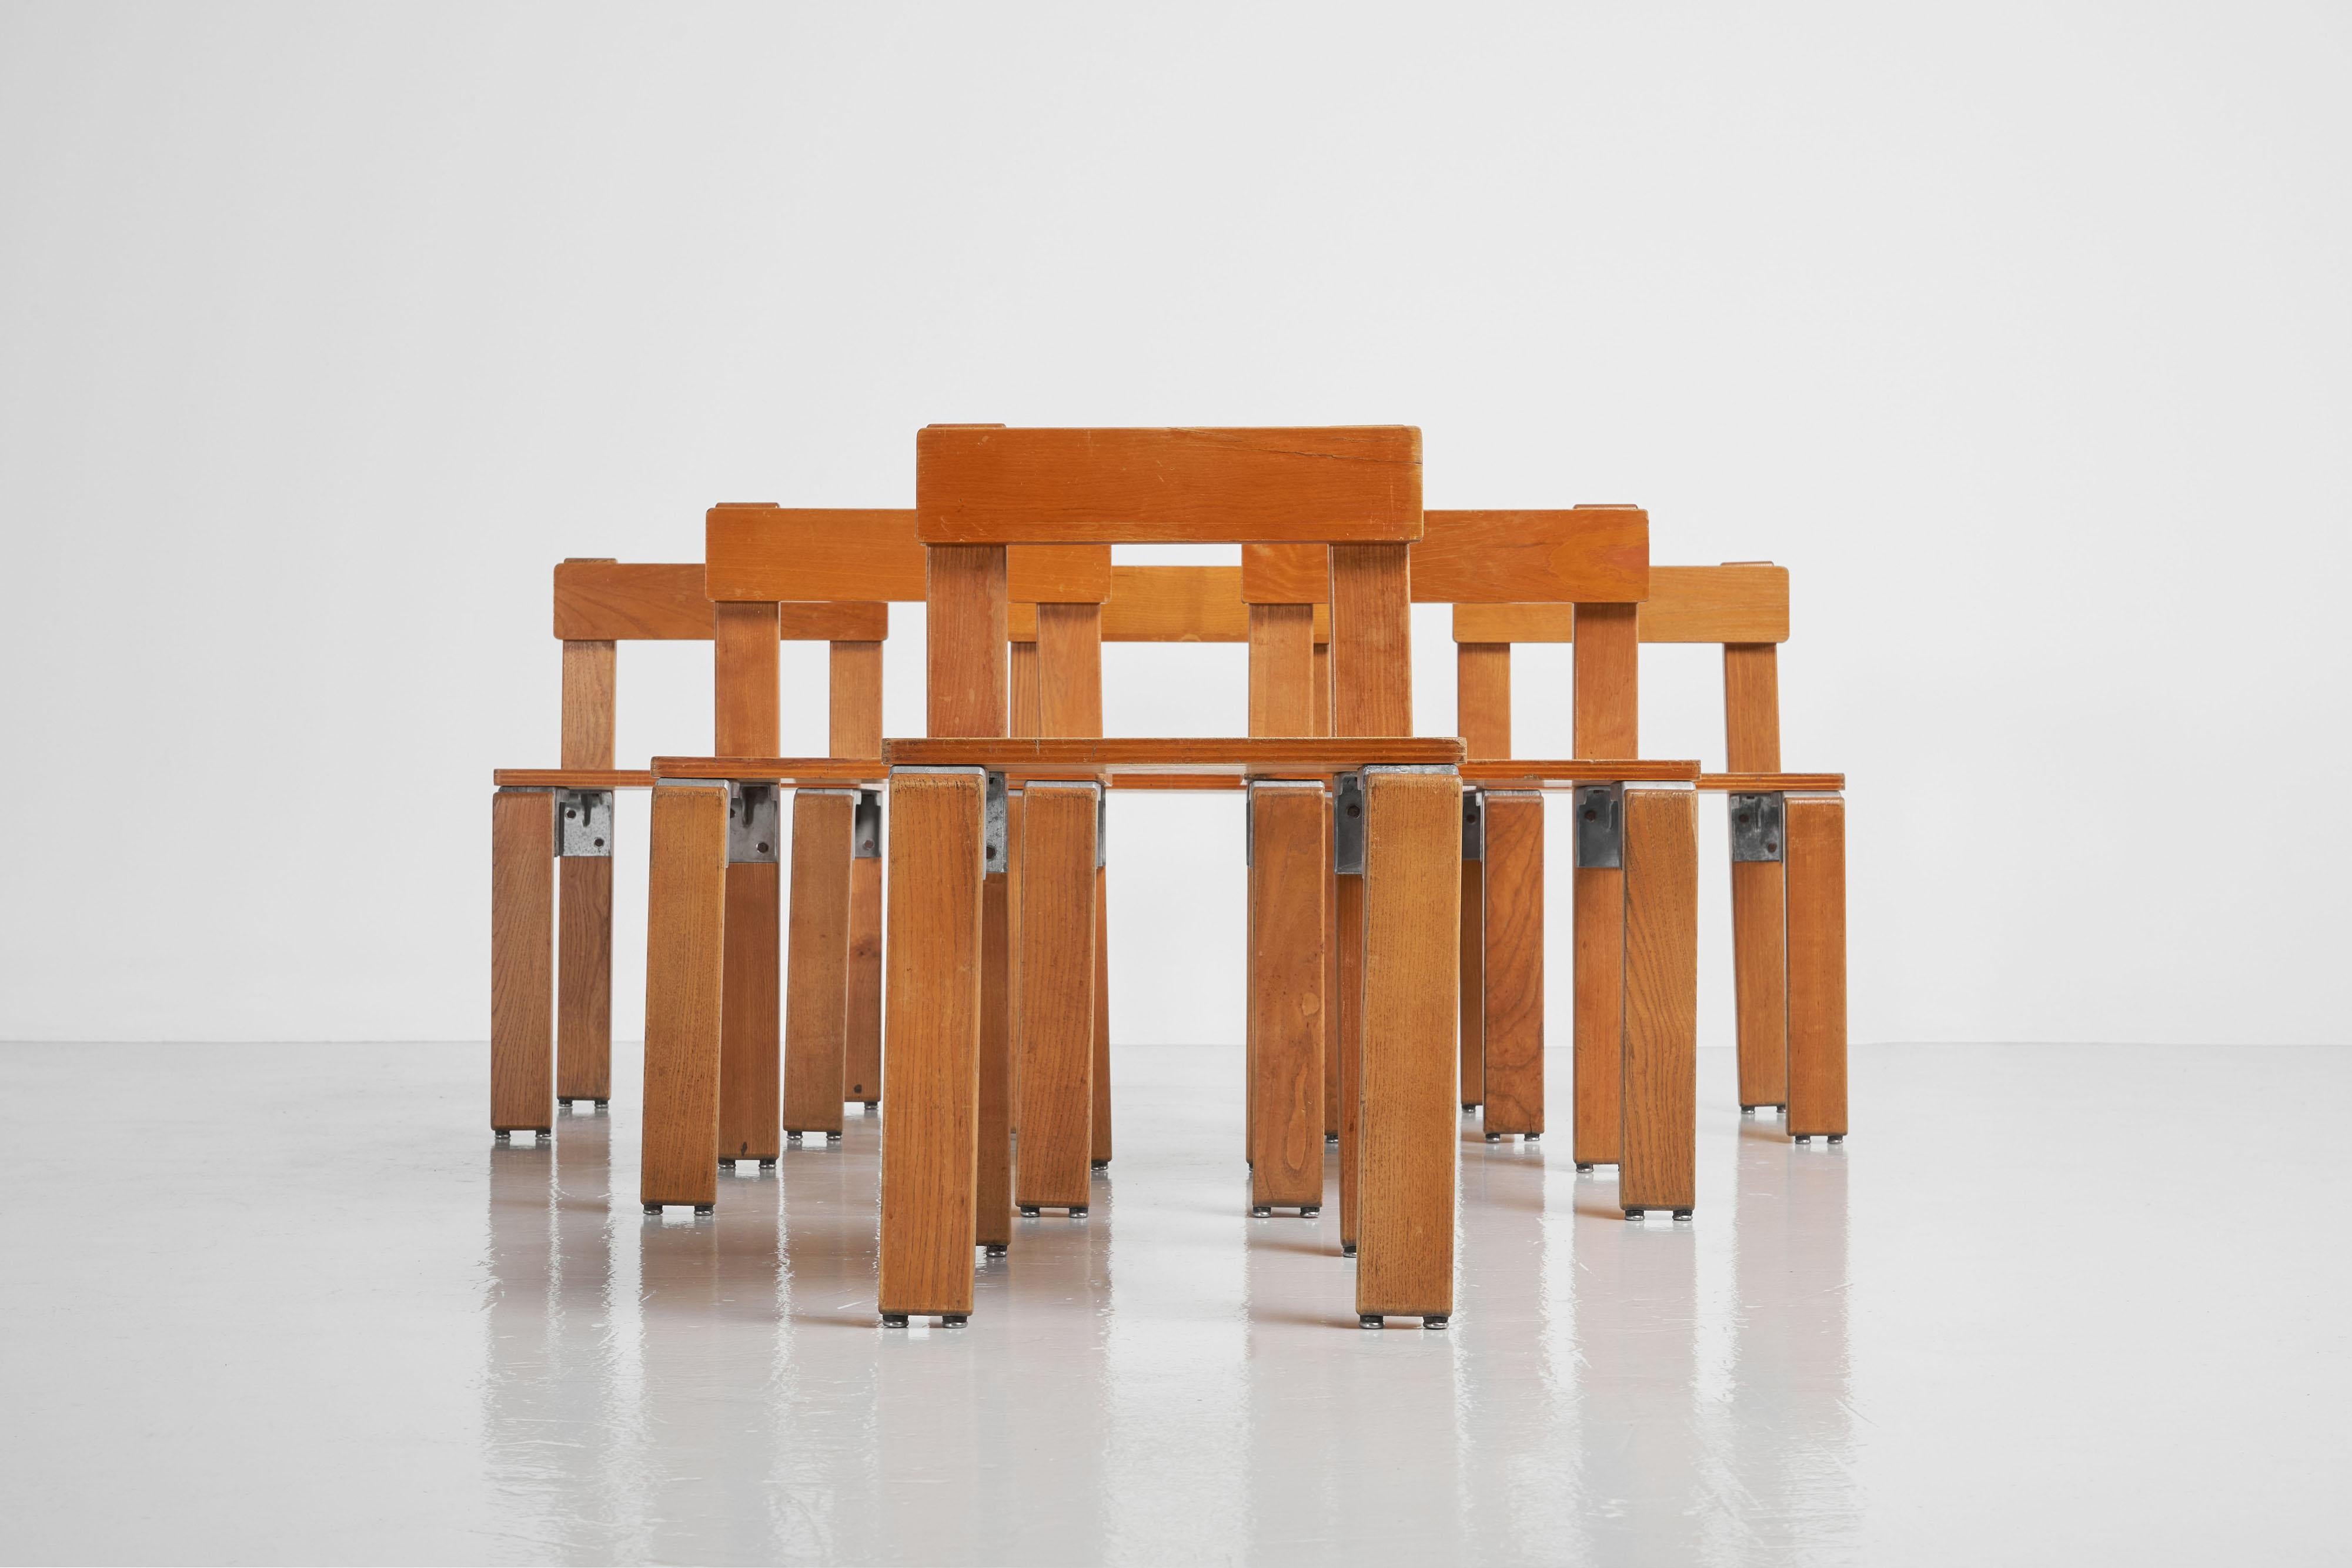 Ein seltener Satz von 6 industriell entworfenen Stühlen des Architekten Georges Candilis (1913-1995), hergestellt von Sentou, Frankreich 1968. Diese Stühle waren Teil eines Entwurfs von Candilis für die Residenz 